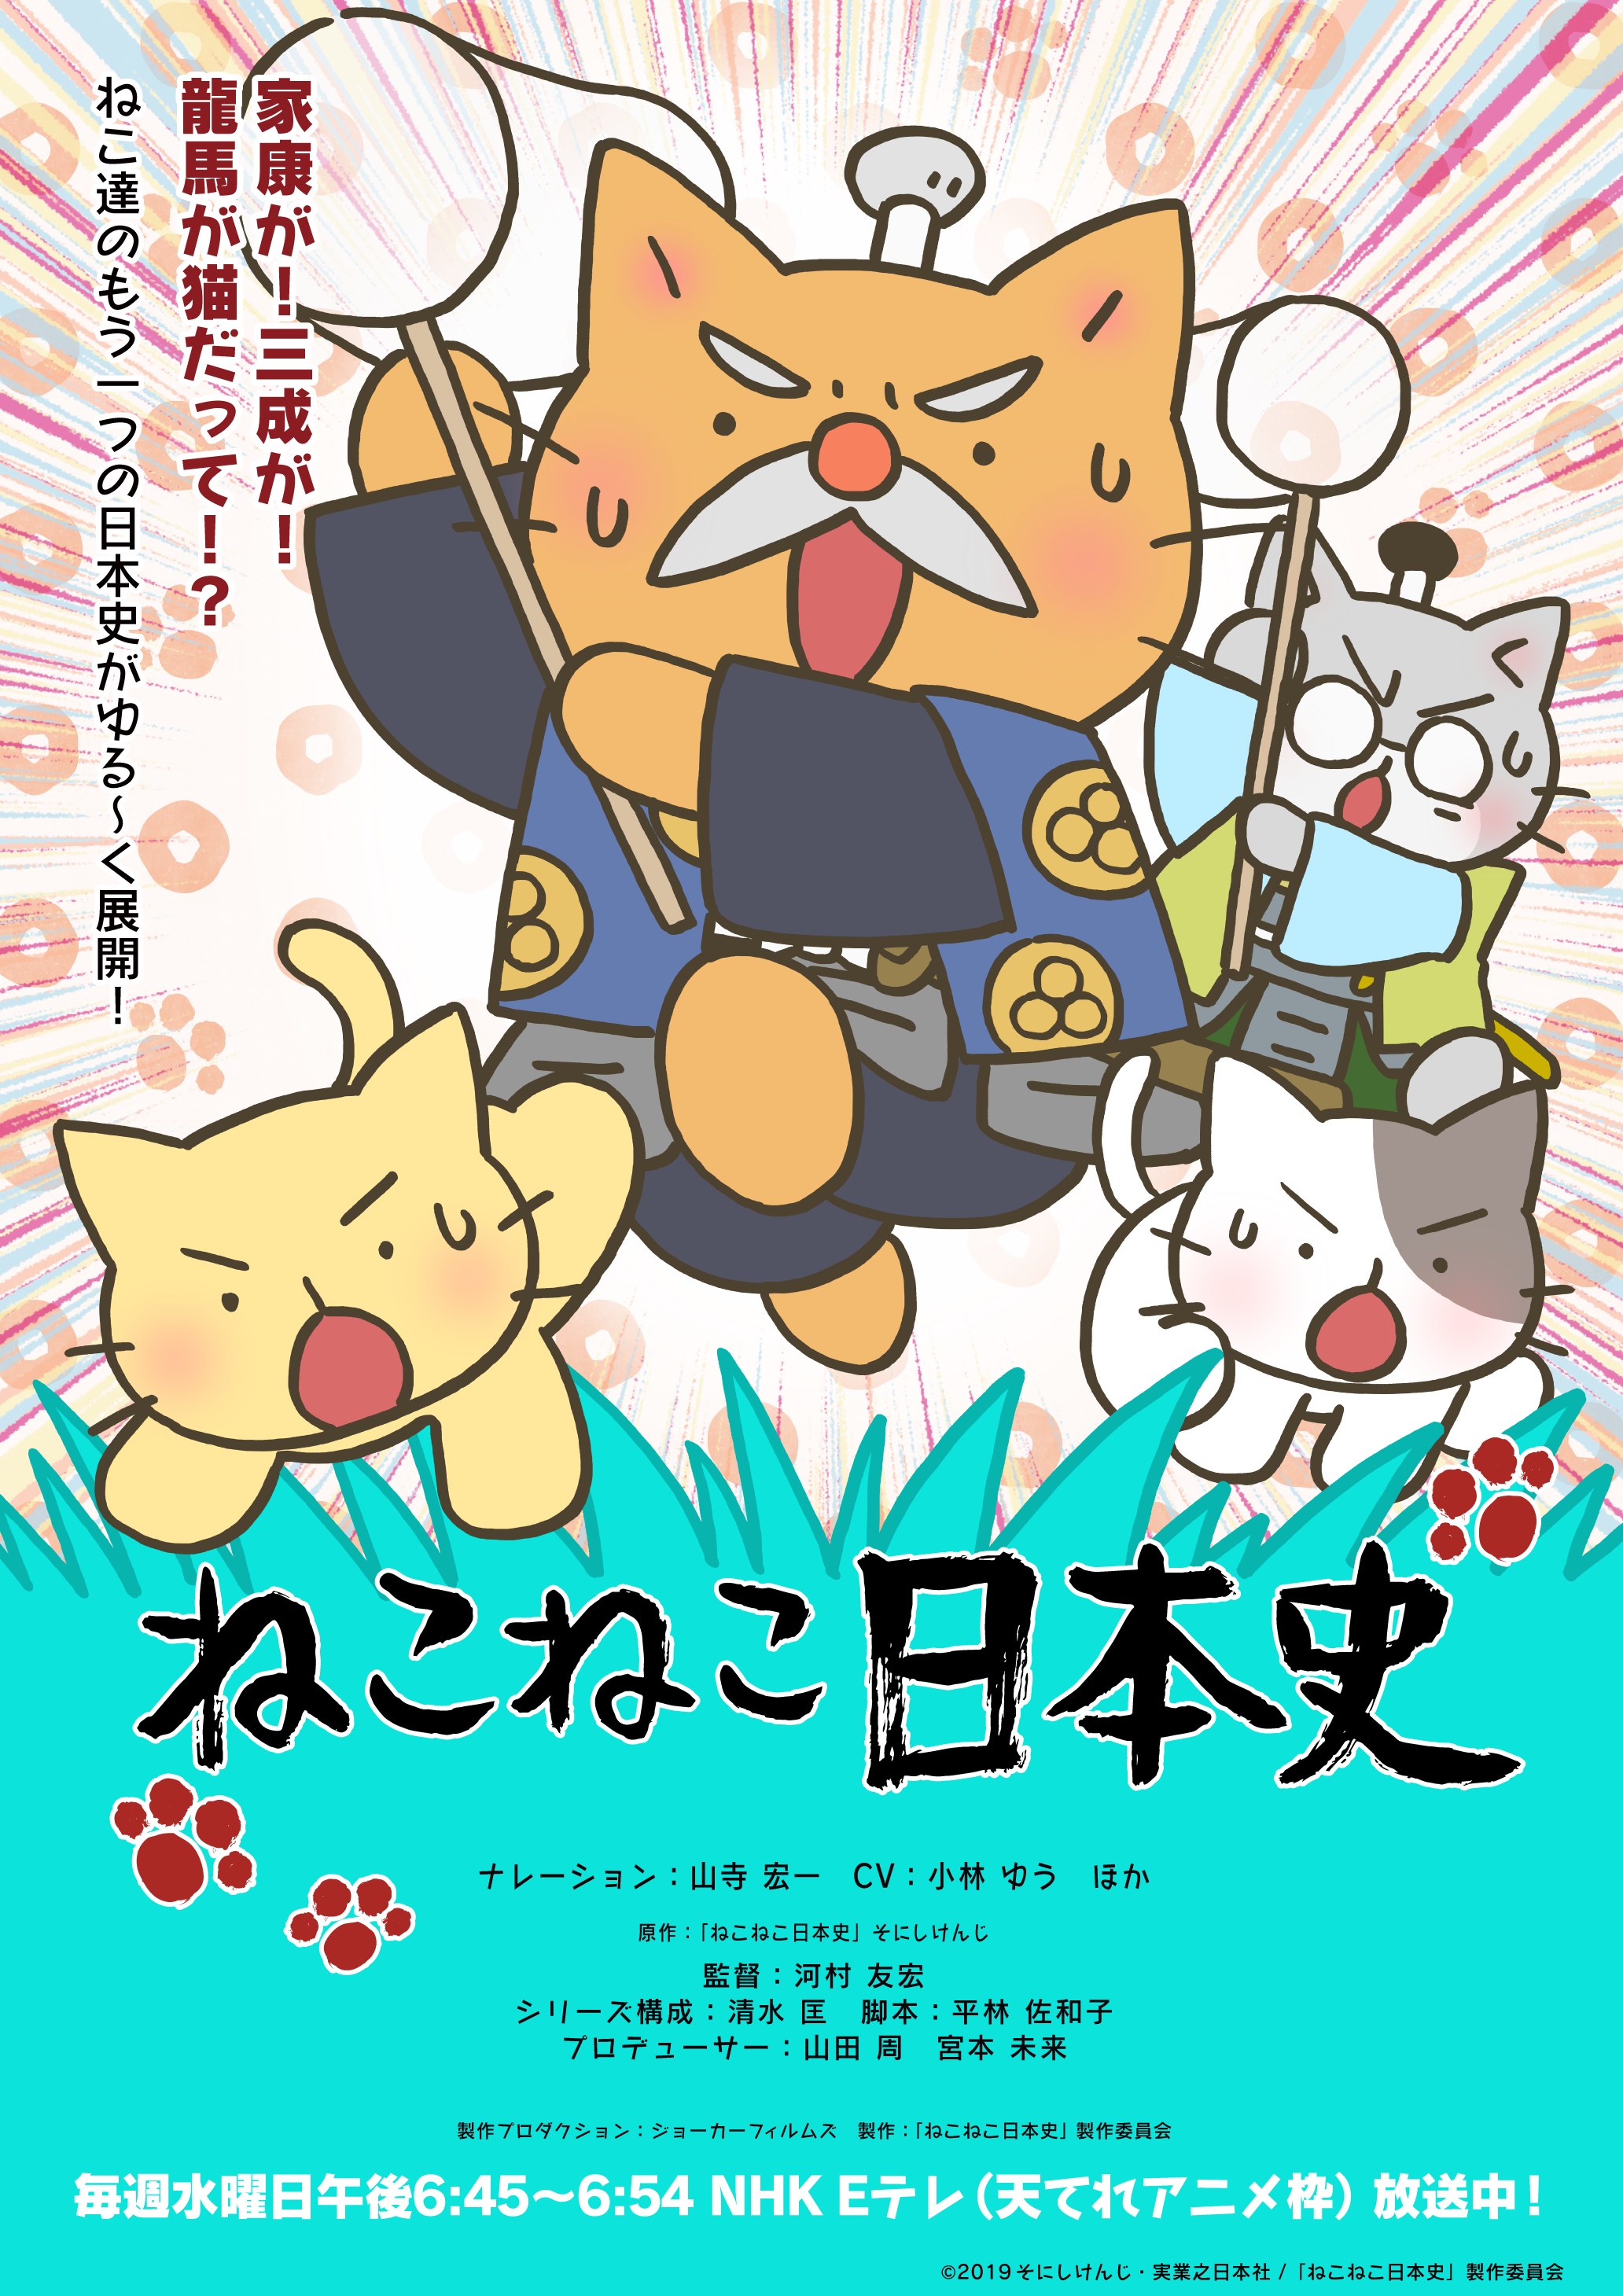 アニメ ねこねこ日本史 第4期後半エンディングテーマの アーティストがむぎ 猫 に決定 オープニングテーマは前回に引き続きelfin が担当 株式会社アニプレックスのプレスリリース